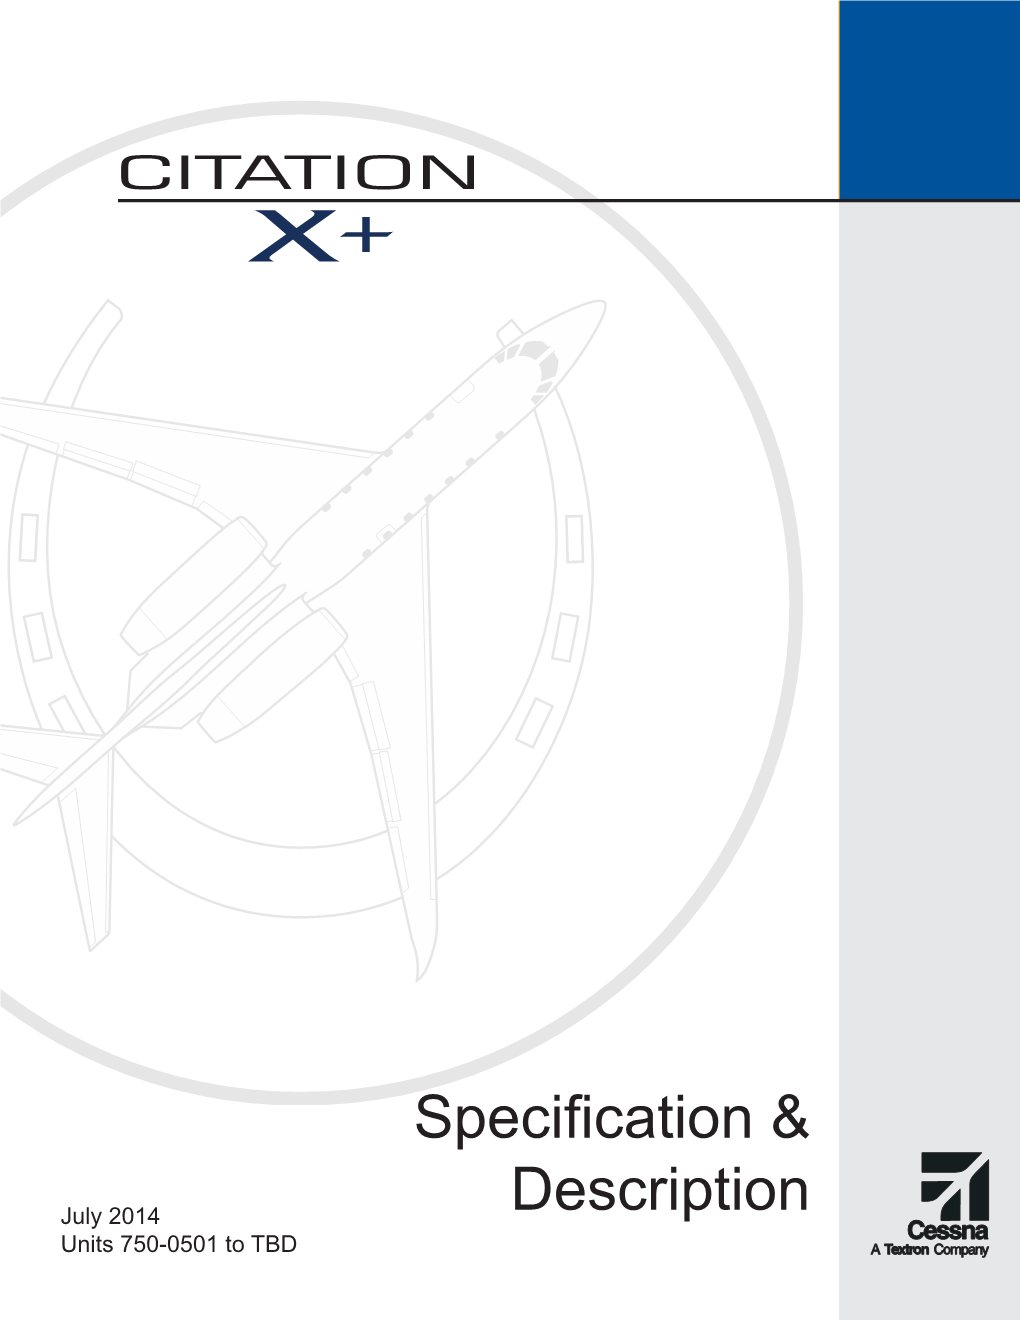 Citation X+ Specification & Description Brochure